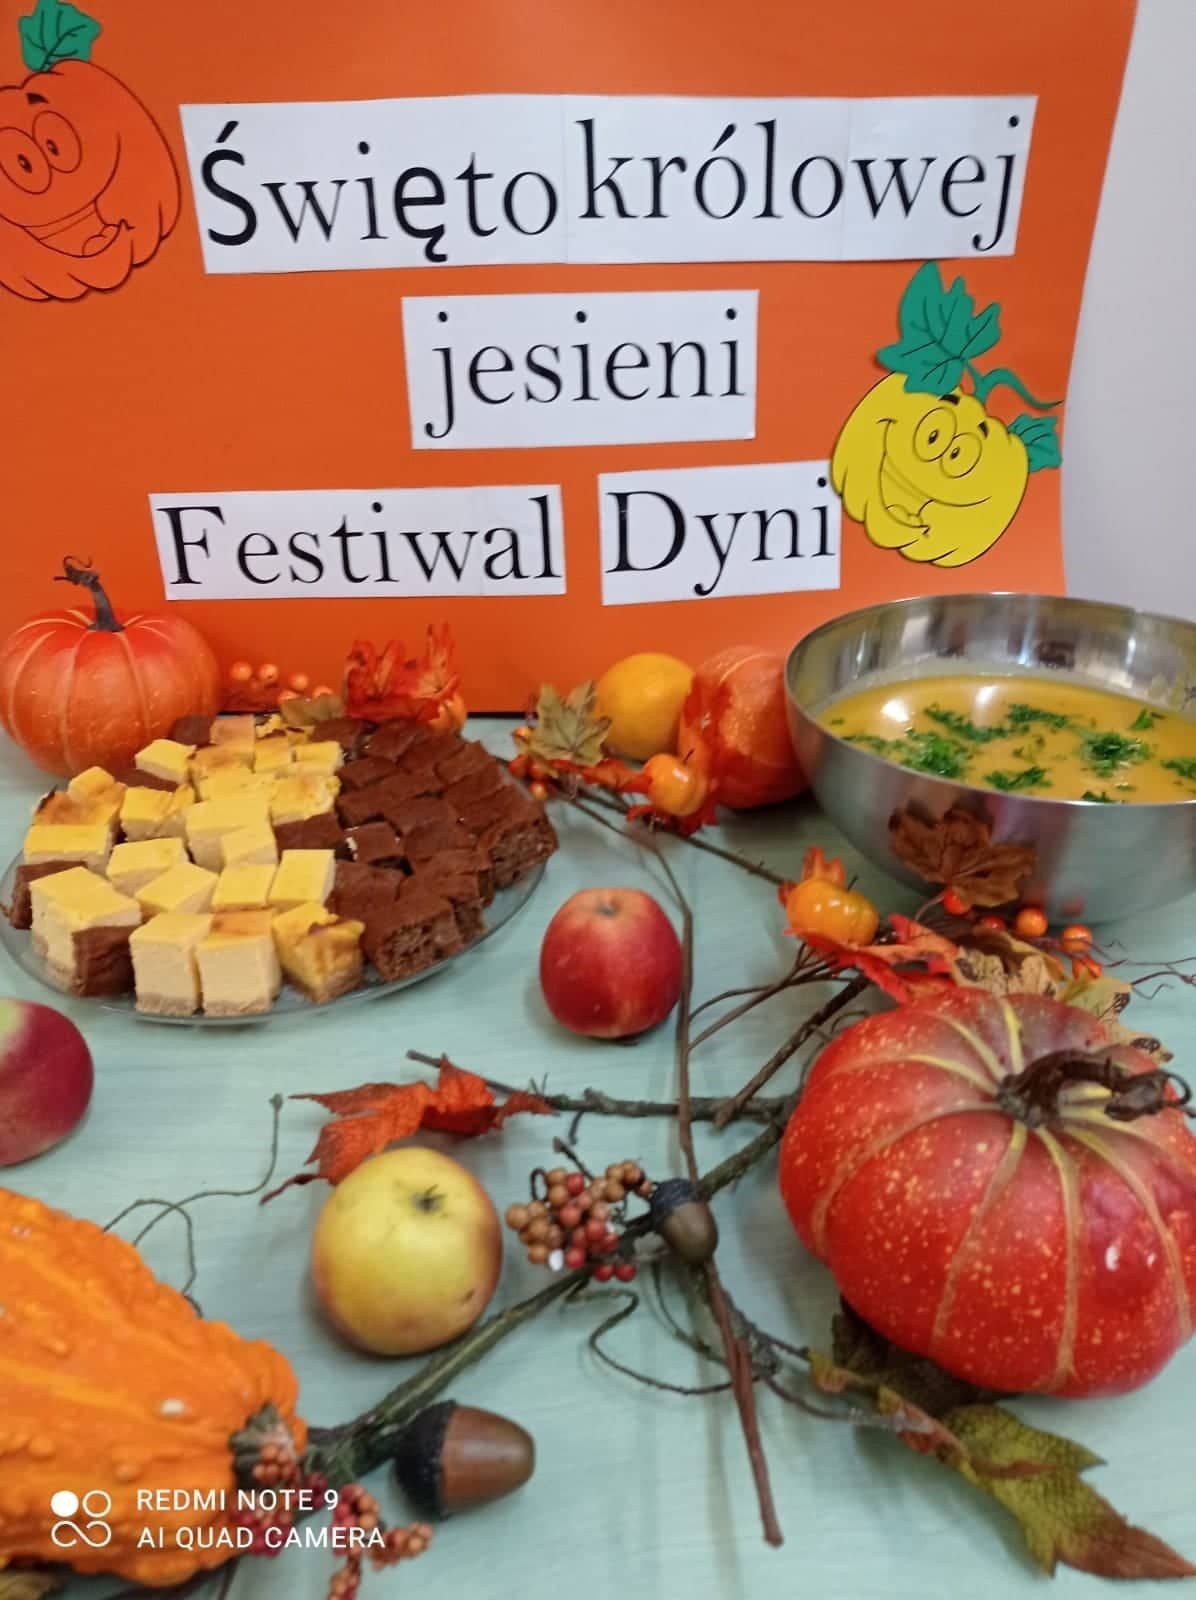 na pierwszym planie , dekoracja z dyni, jabłek i gałązek, miska z zupą dyniową oraz patera z ciastem . W tle na pomarańczowym kartonie napis: święto królowej jesieni – festiwal dyni